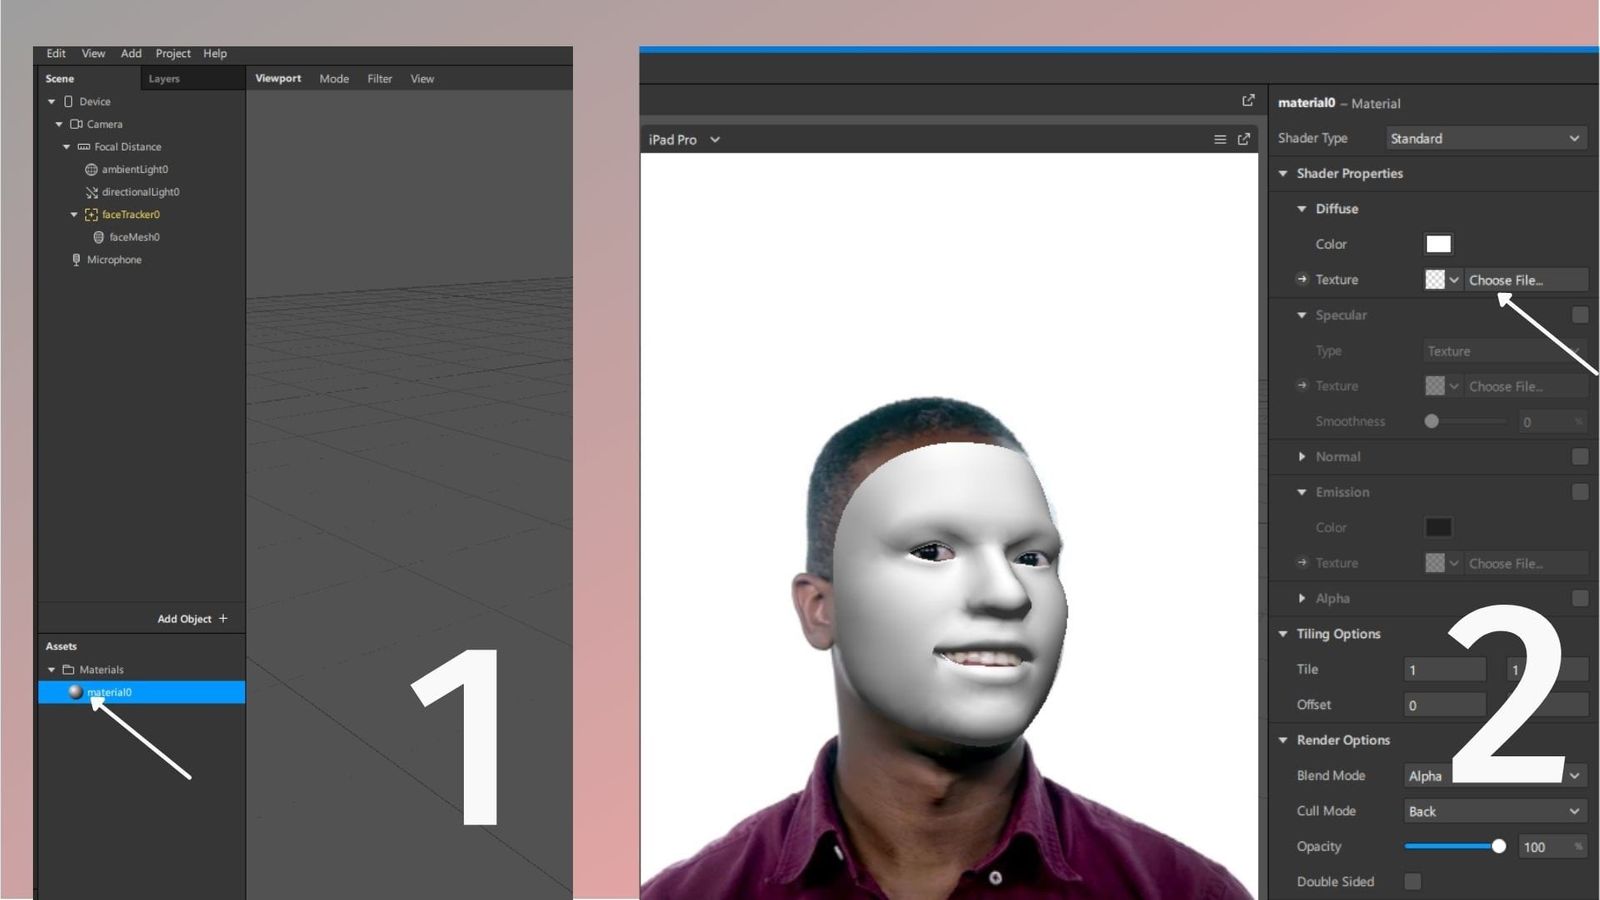 Приложение создавать маски как называется. Маска для Инстаграм создание. Как сделать маску в телеграмме на фото. Приложение на андроид которое может делать маску из фото для видео. Как создать маску в приложении б 6 12.